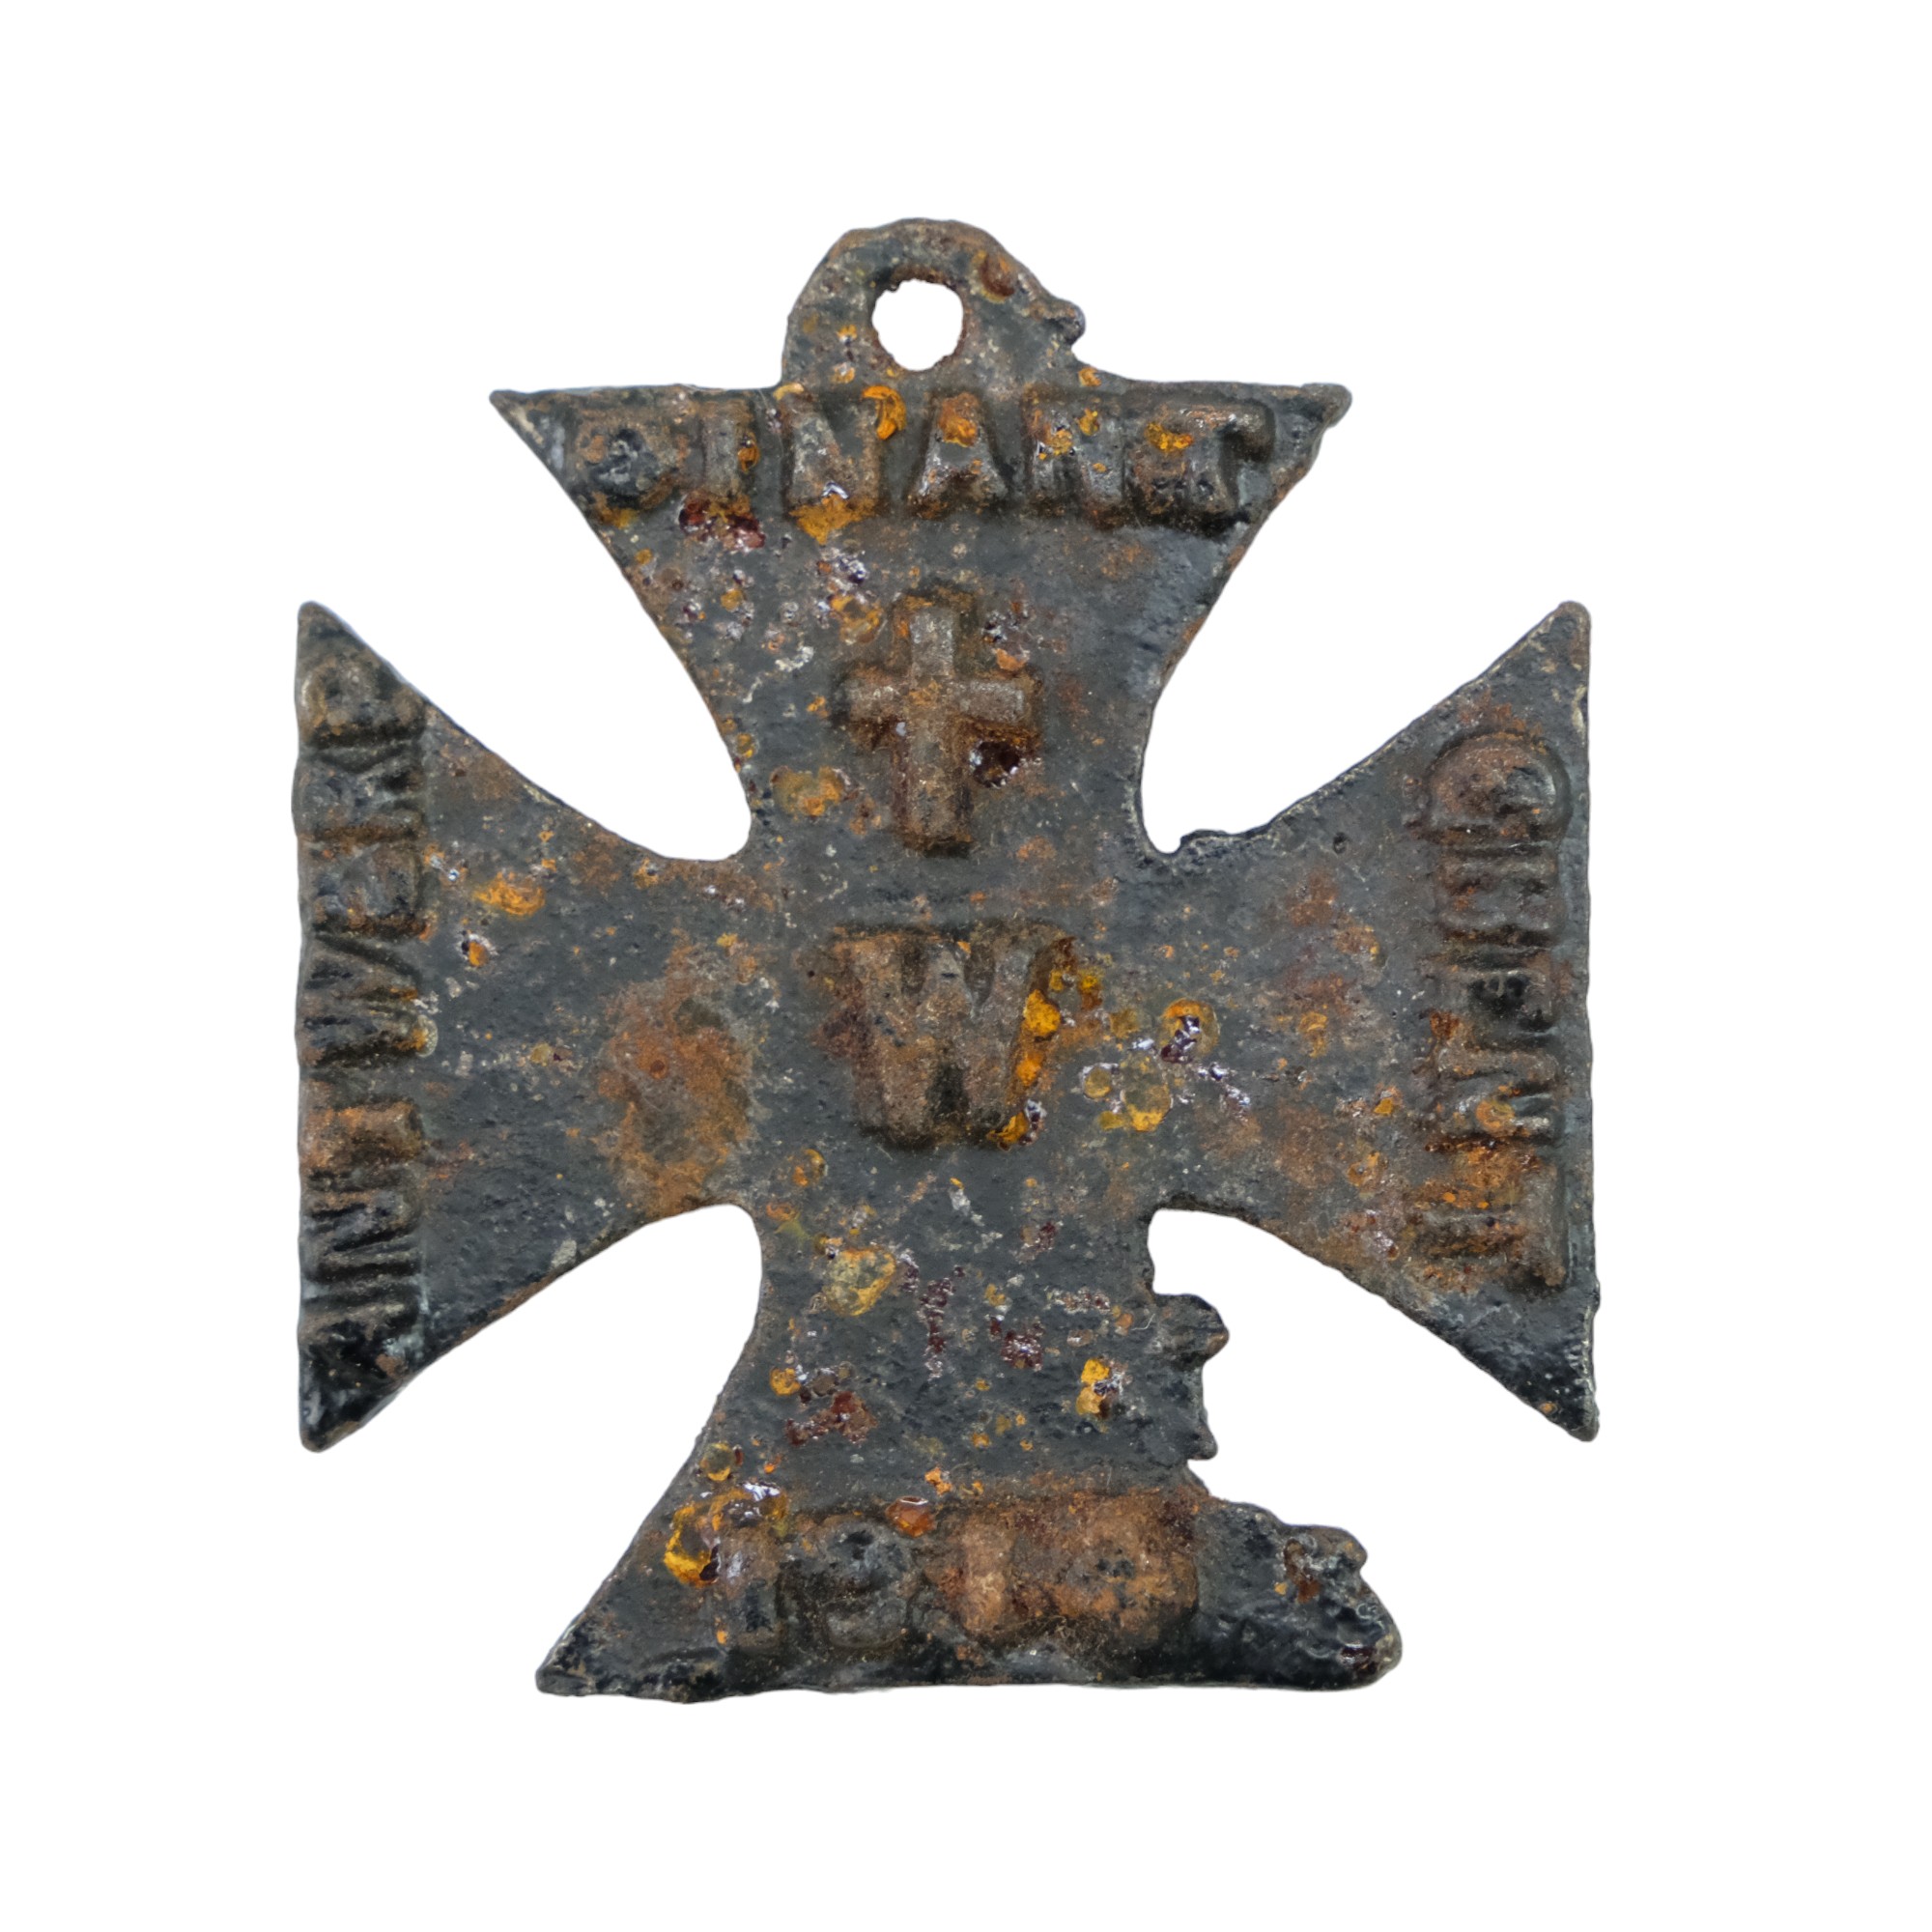 A Great War Allied mock German iron cross propaganda medal - Image 2 of 2